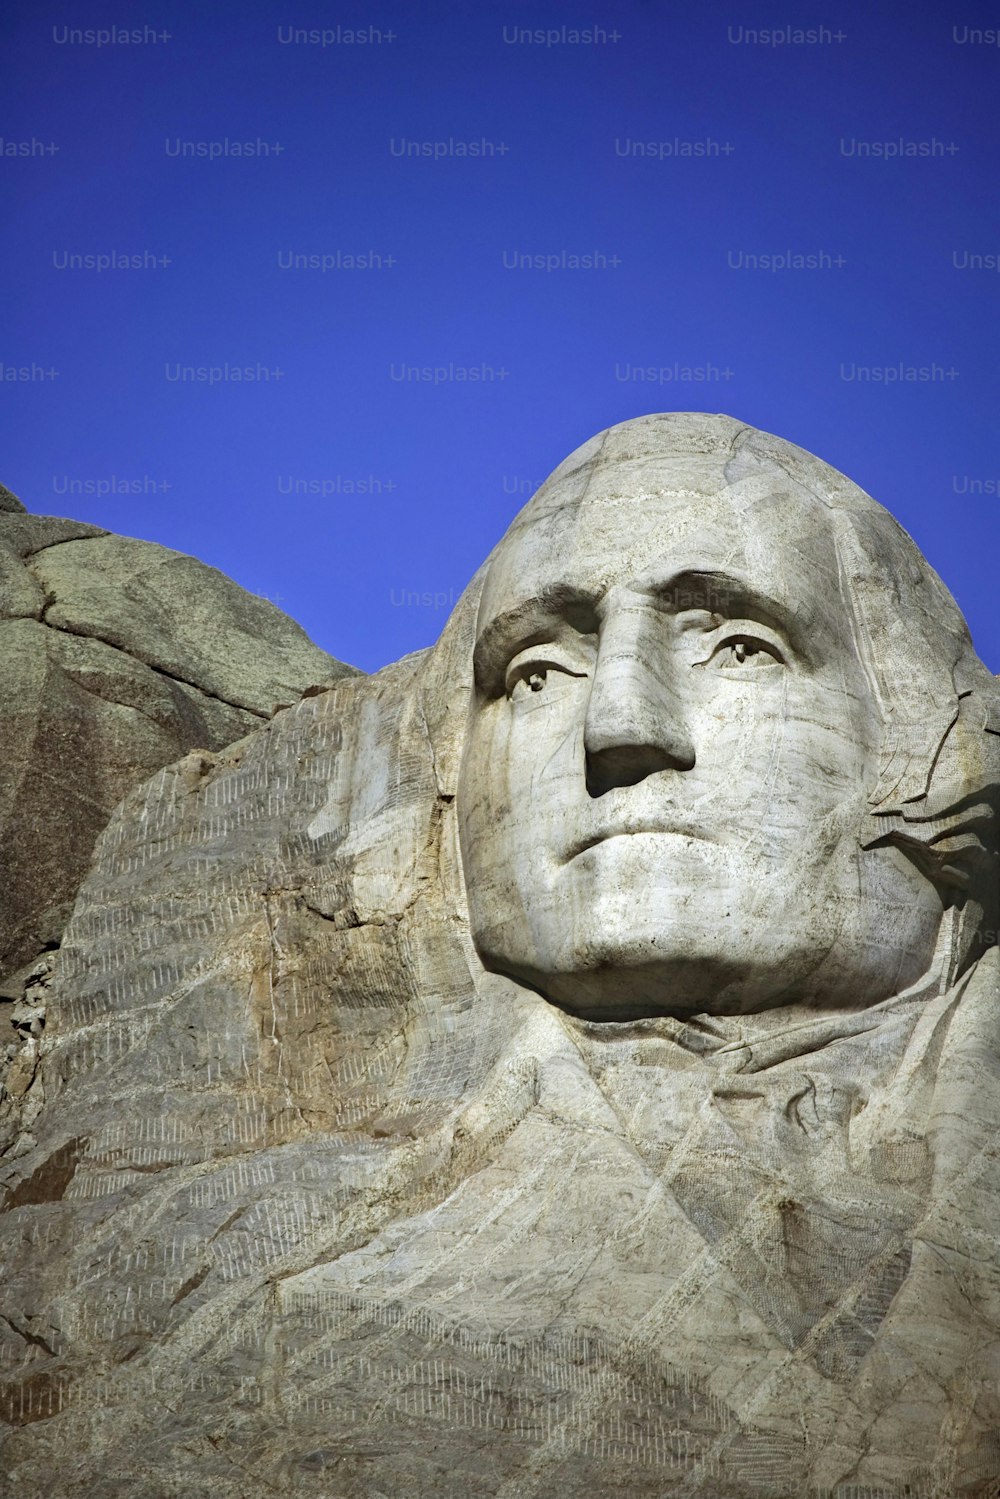 Il volto di Abraham Lincoln scolpito nel fianco di una montagna